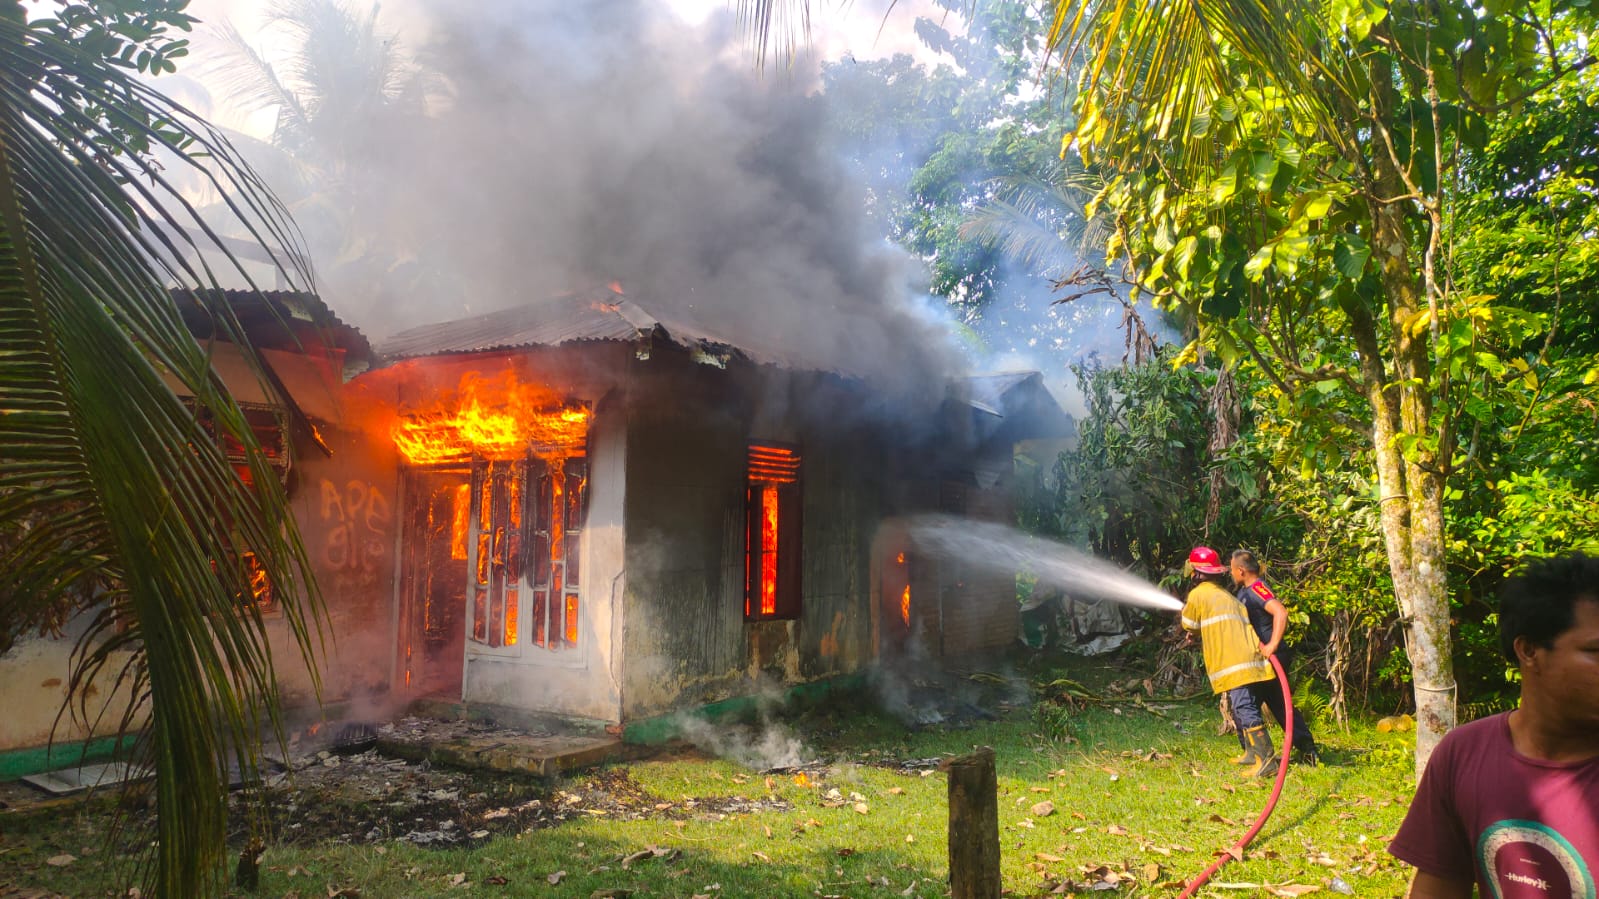 Kebakaran 1 Unit Rumah di Bungo, Diduga  Anak Korban dengan Gangguan Jiwa Bakar Barang di Dalam Rumah 